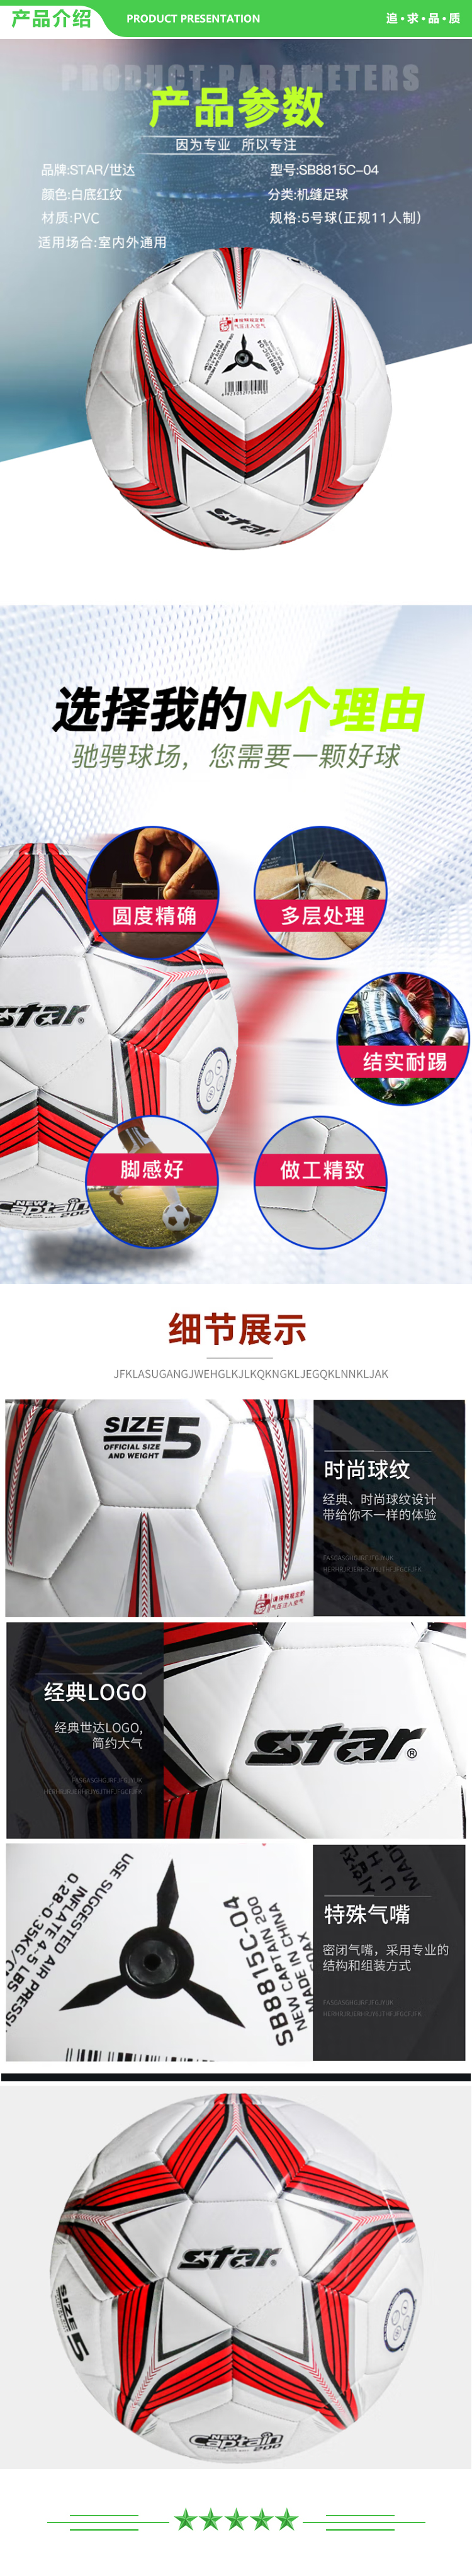 世达 star SB8815C-04 足球红色PVC 机缝 5号足球青少年训练比赛用球足球 .jpg